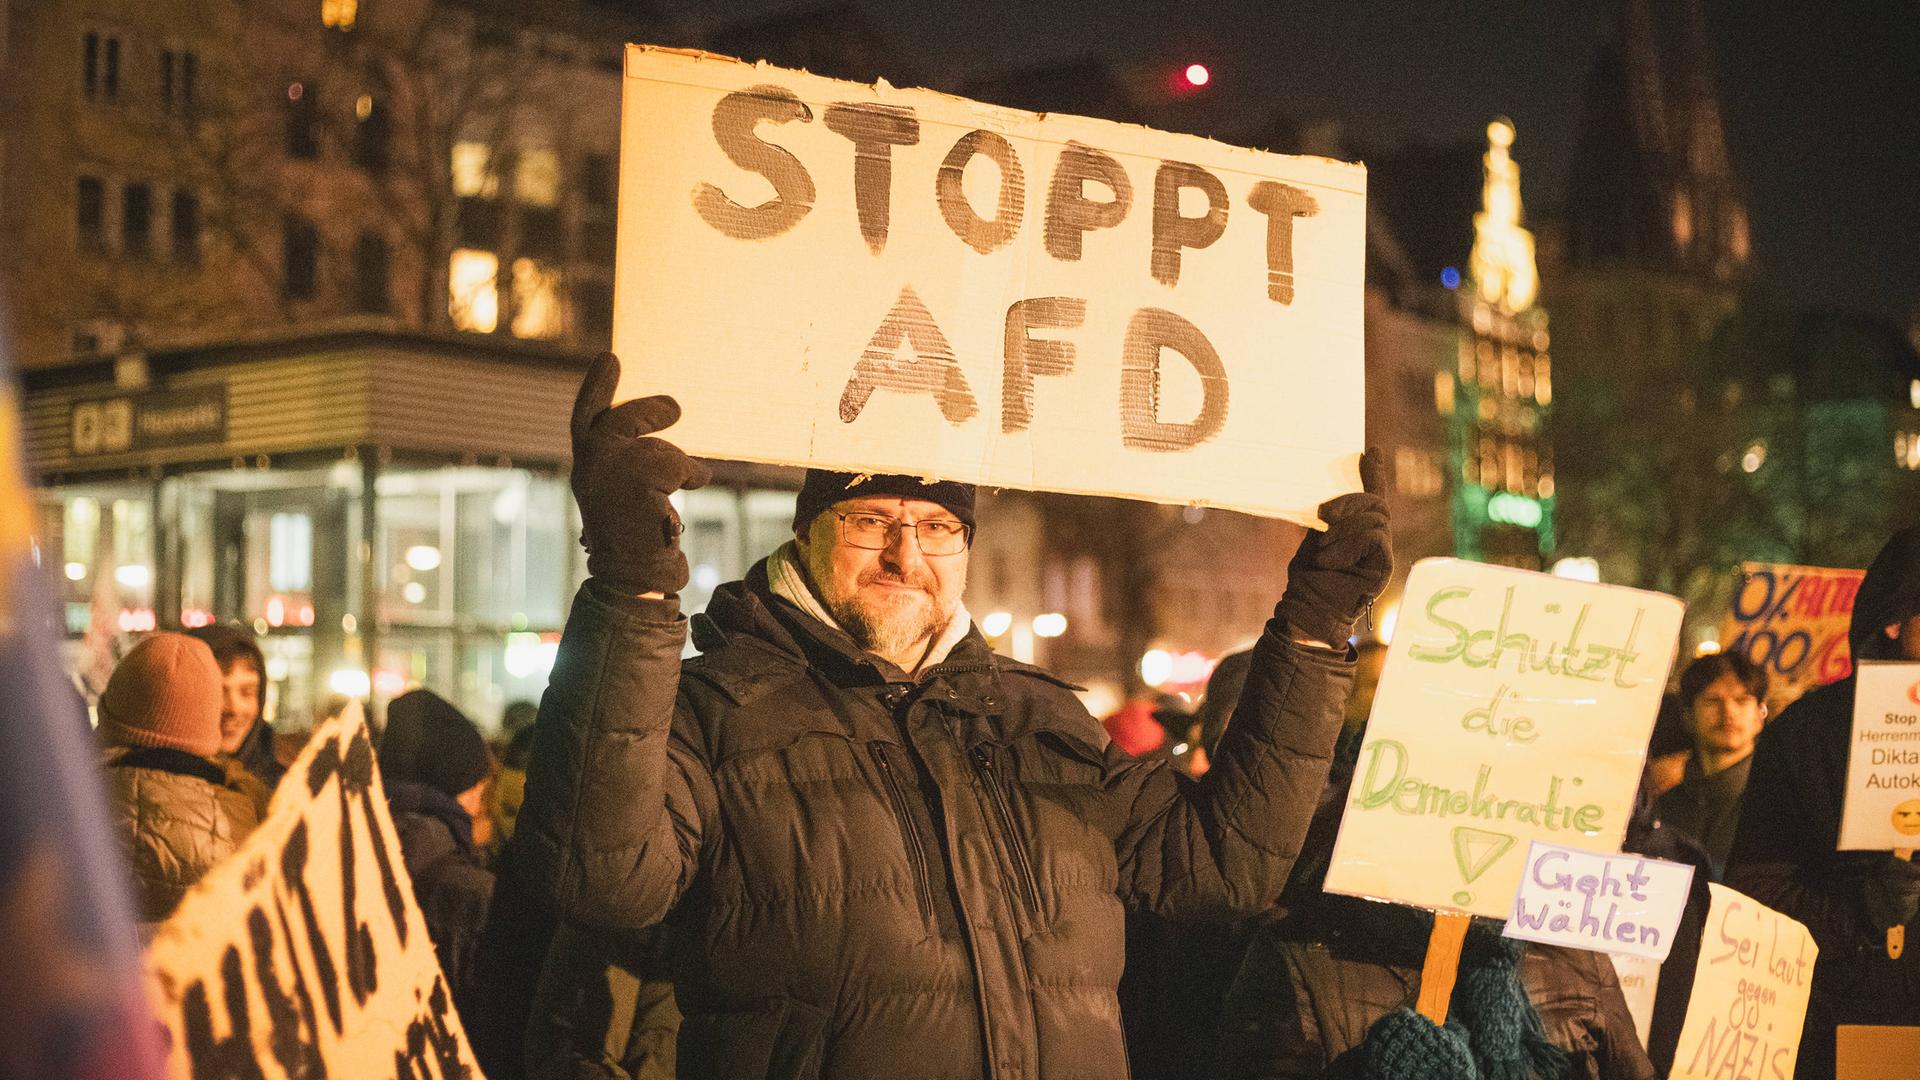 Eine Demonstration in Köln gegen die Afd und für Demokratie, ein Teilnehmer mit dem Schild: "STOPPT AFD", Köln Heumarkt, 16.01.2024.